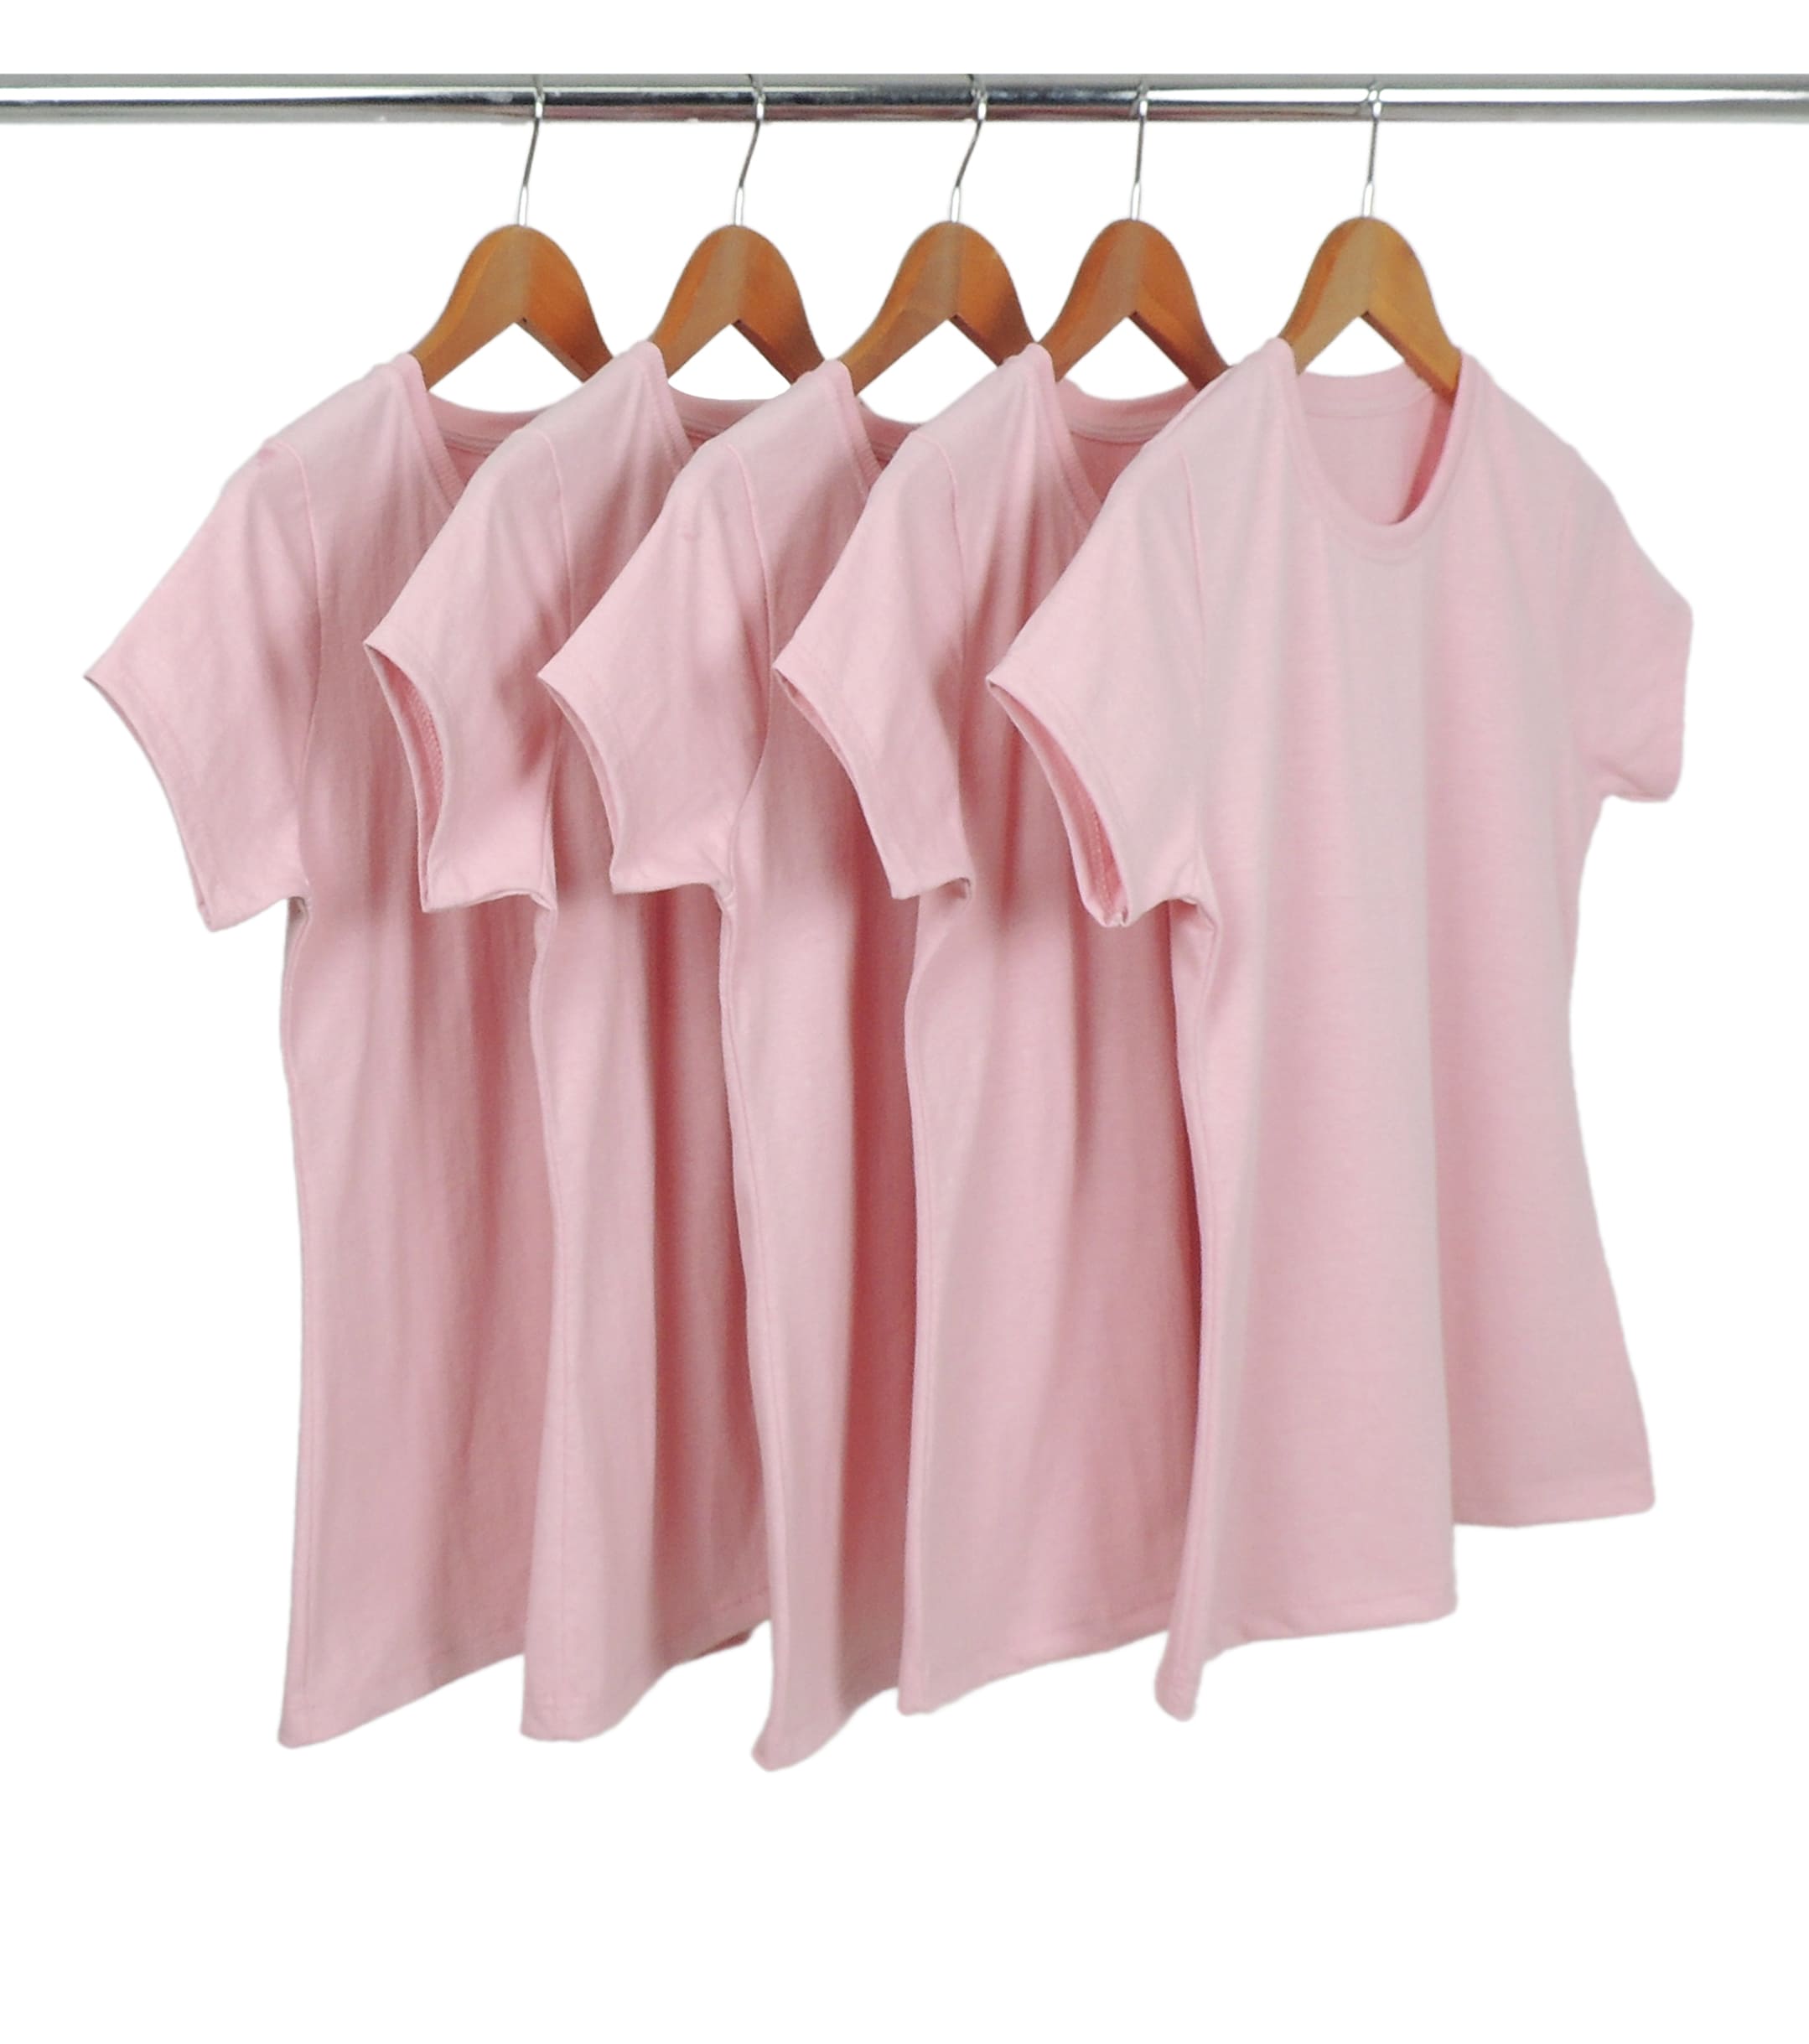 Kit 5 Camisetas Femininas Comfort Mescla Rosa Claro